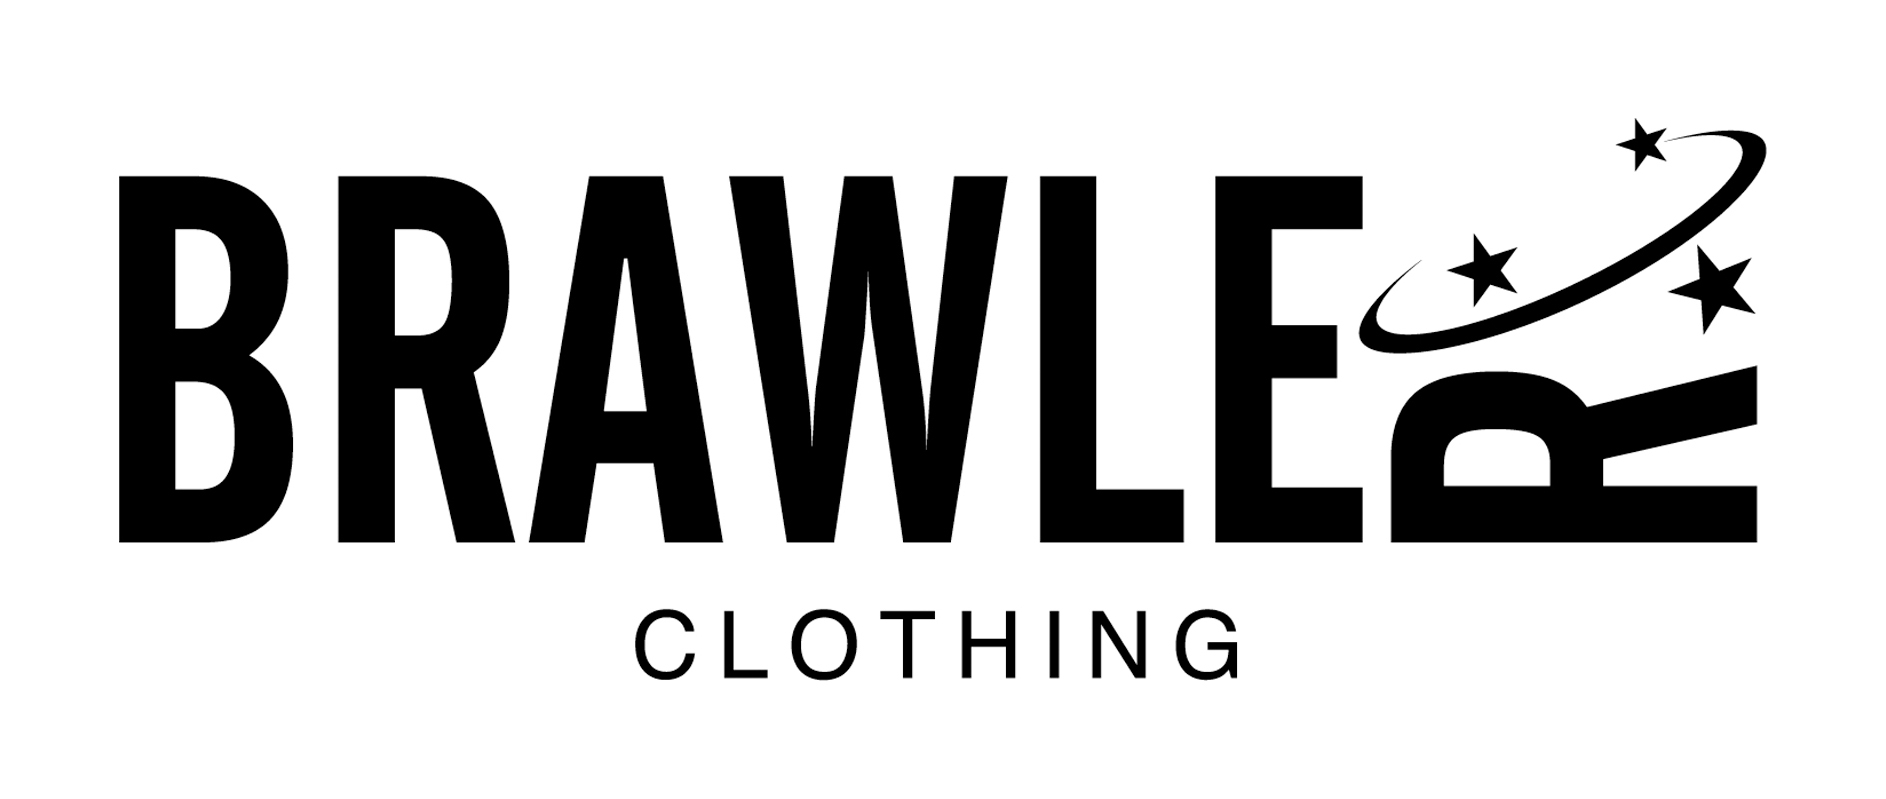 Identity for Newcastle based clothing company 'Brawler Clothing'.